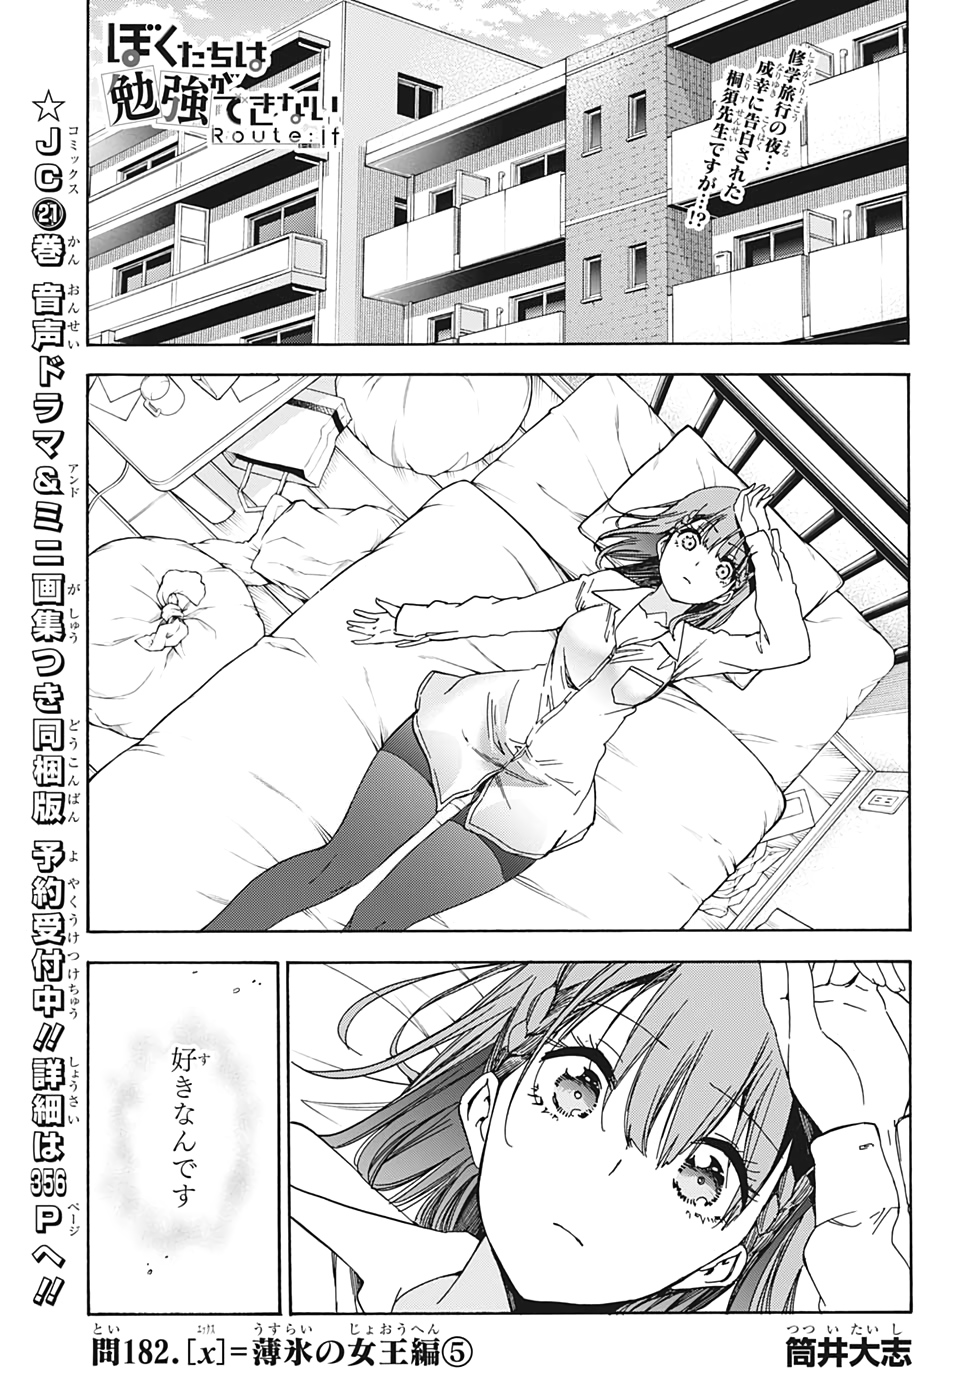 Bokutachi wa Benkyou ga Dekinai - Chapter 182 - Page 1